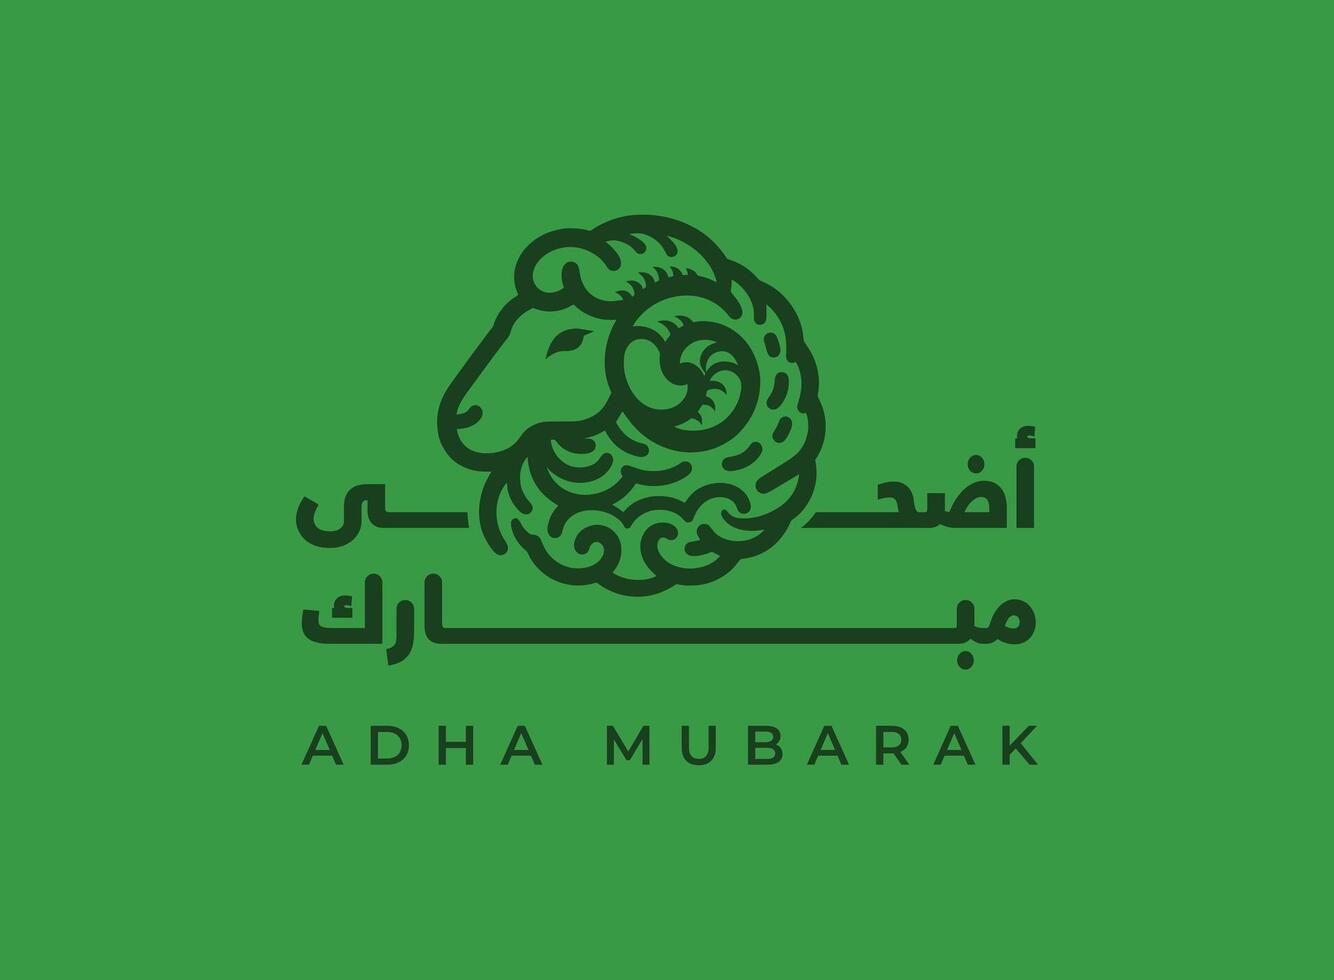 Übersetzung eid adha Mubarak im Arabisch Sprache Gruß Karte Design mit ein Schaf Lamm Kopf Gruß Karte Design vektor